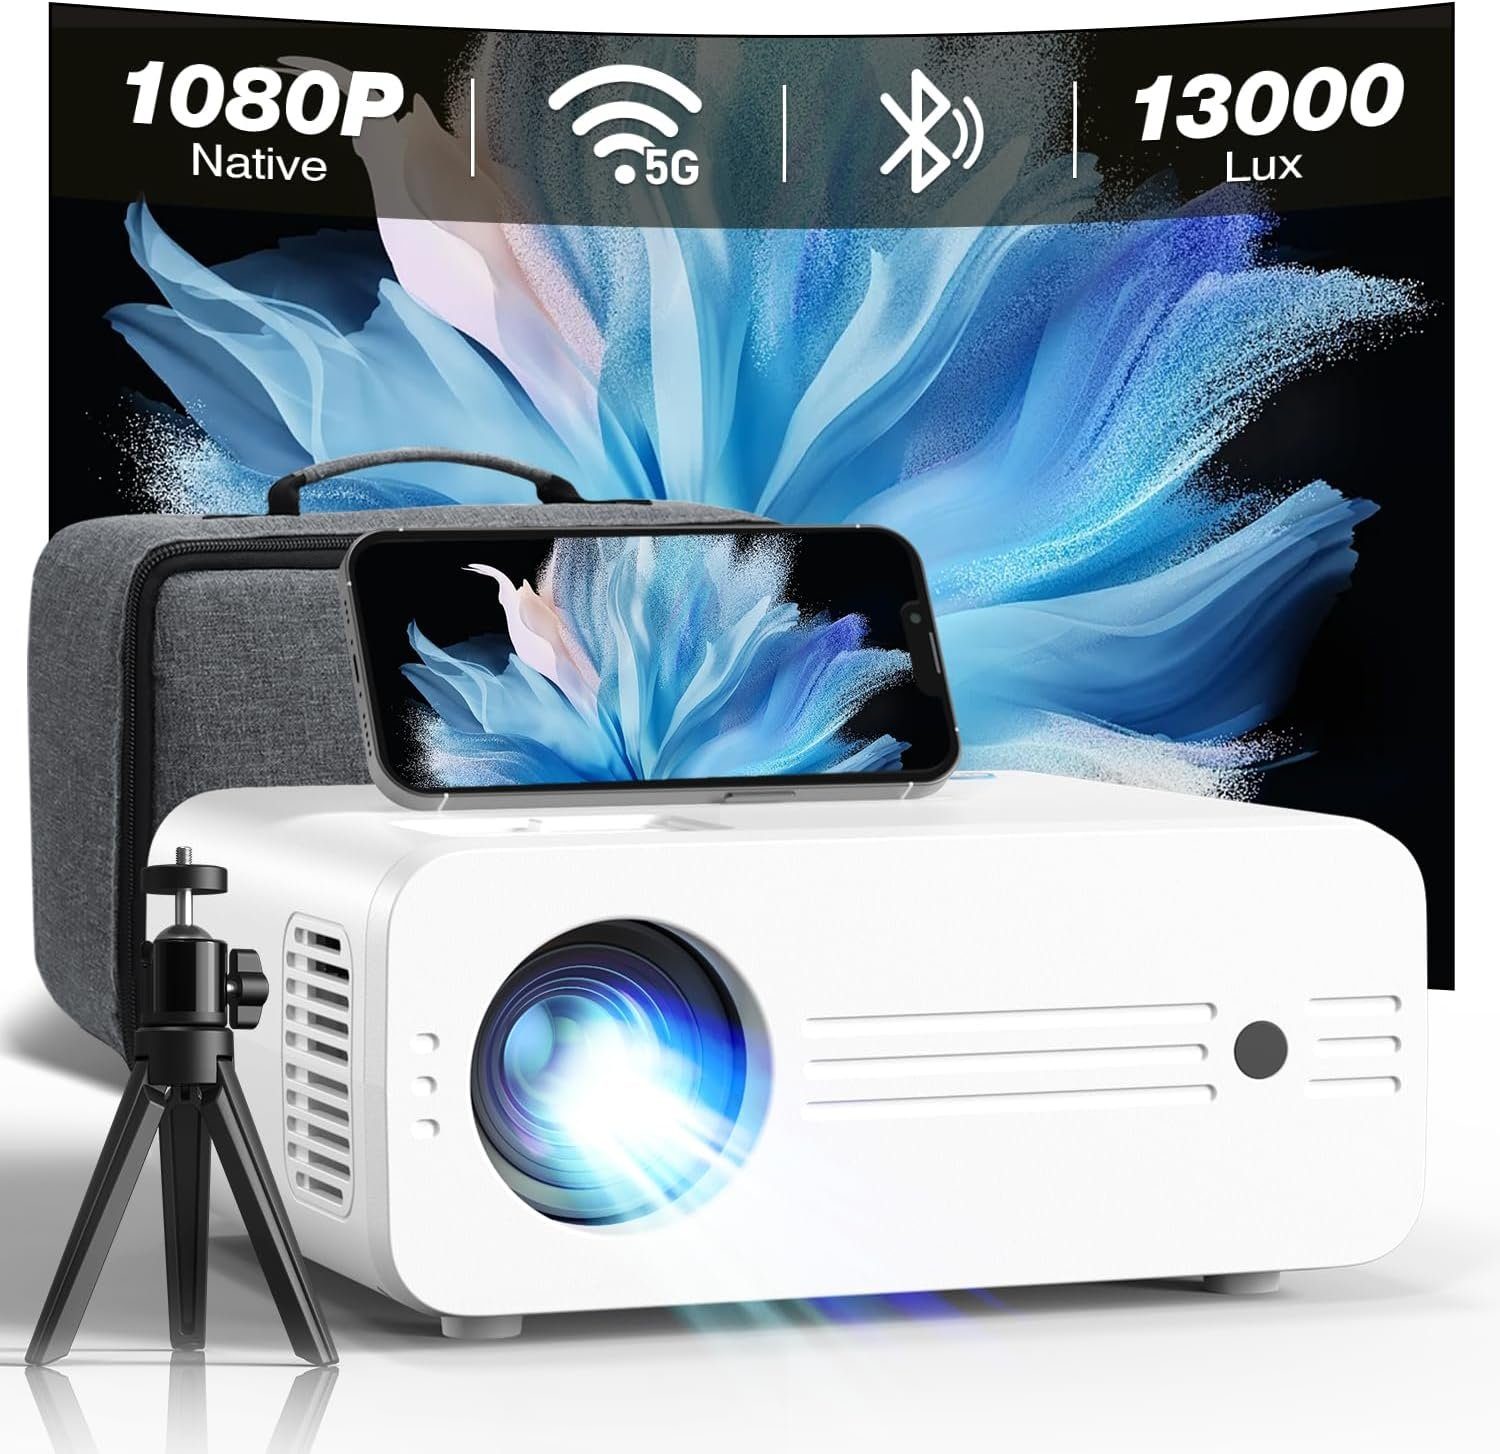 iZEEKER Portabler Projektor (10.000:1, 3840 x 2160 px, Mini Beamer 5G WiFi 13000 Lux 300'' Heimkino 1080P/4K HDMI/USB/TV/PS5)